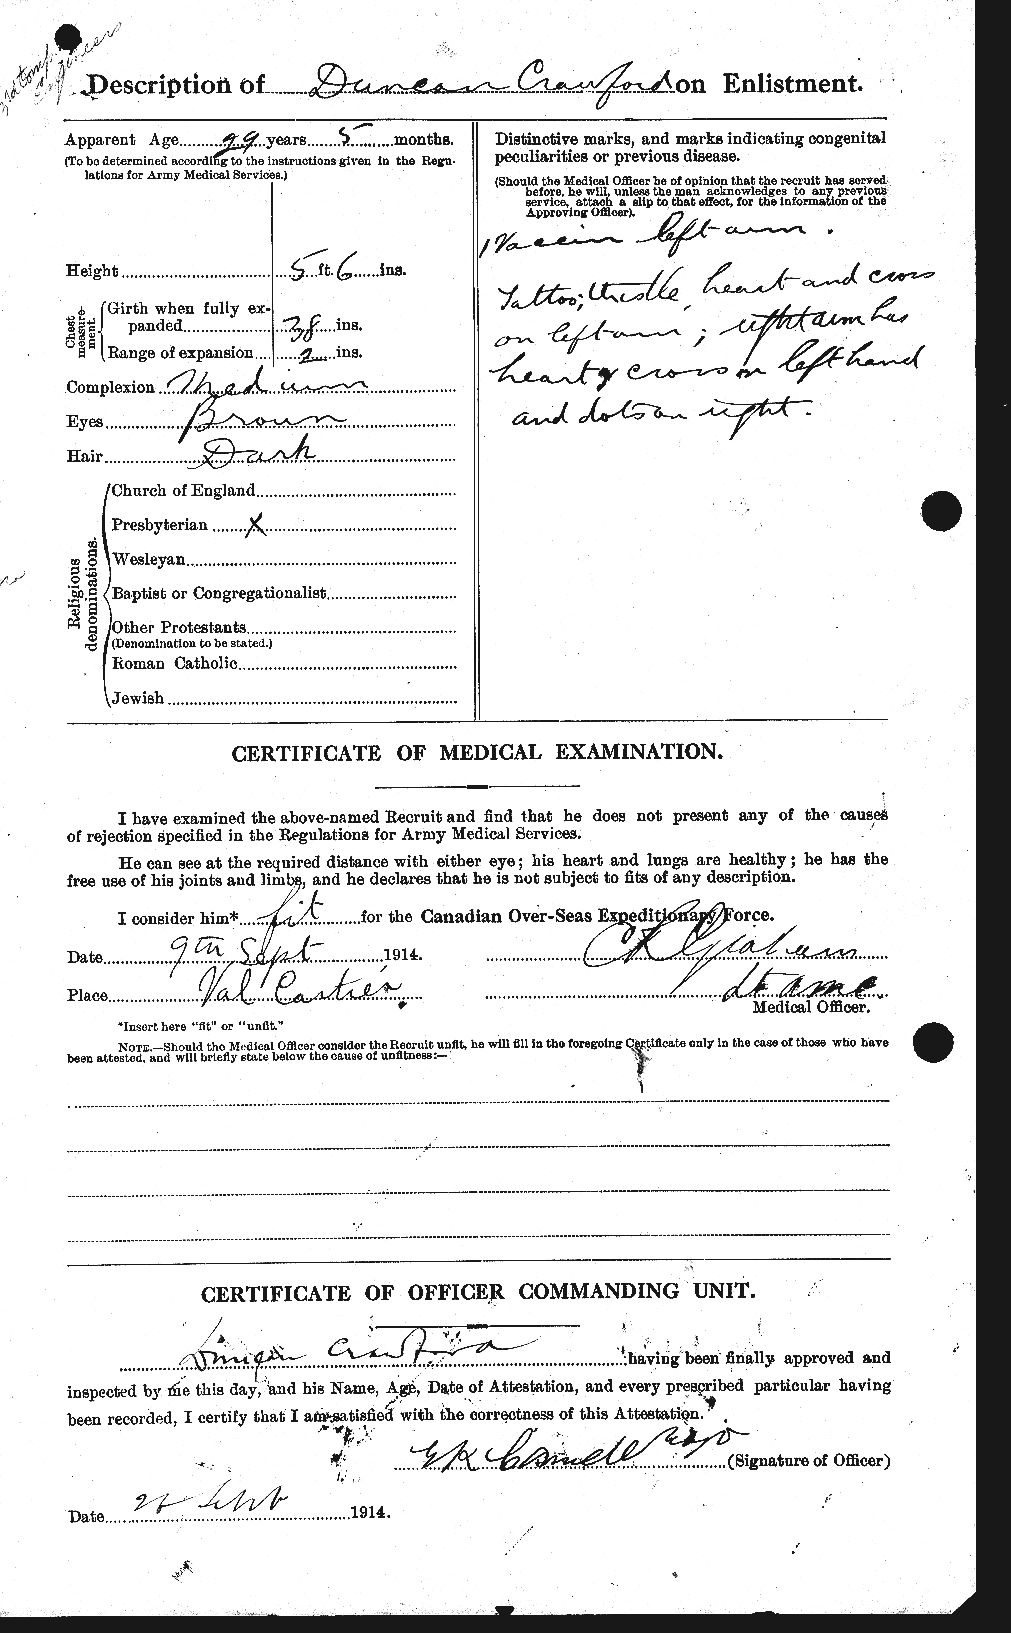 Dossiers du Personnel de la Première Guerre mondiale - CEC 060811b